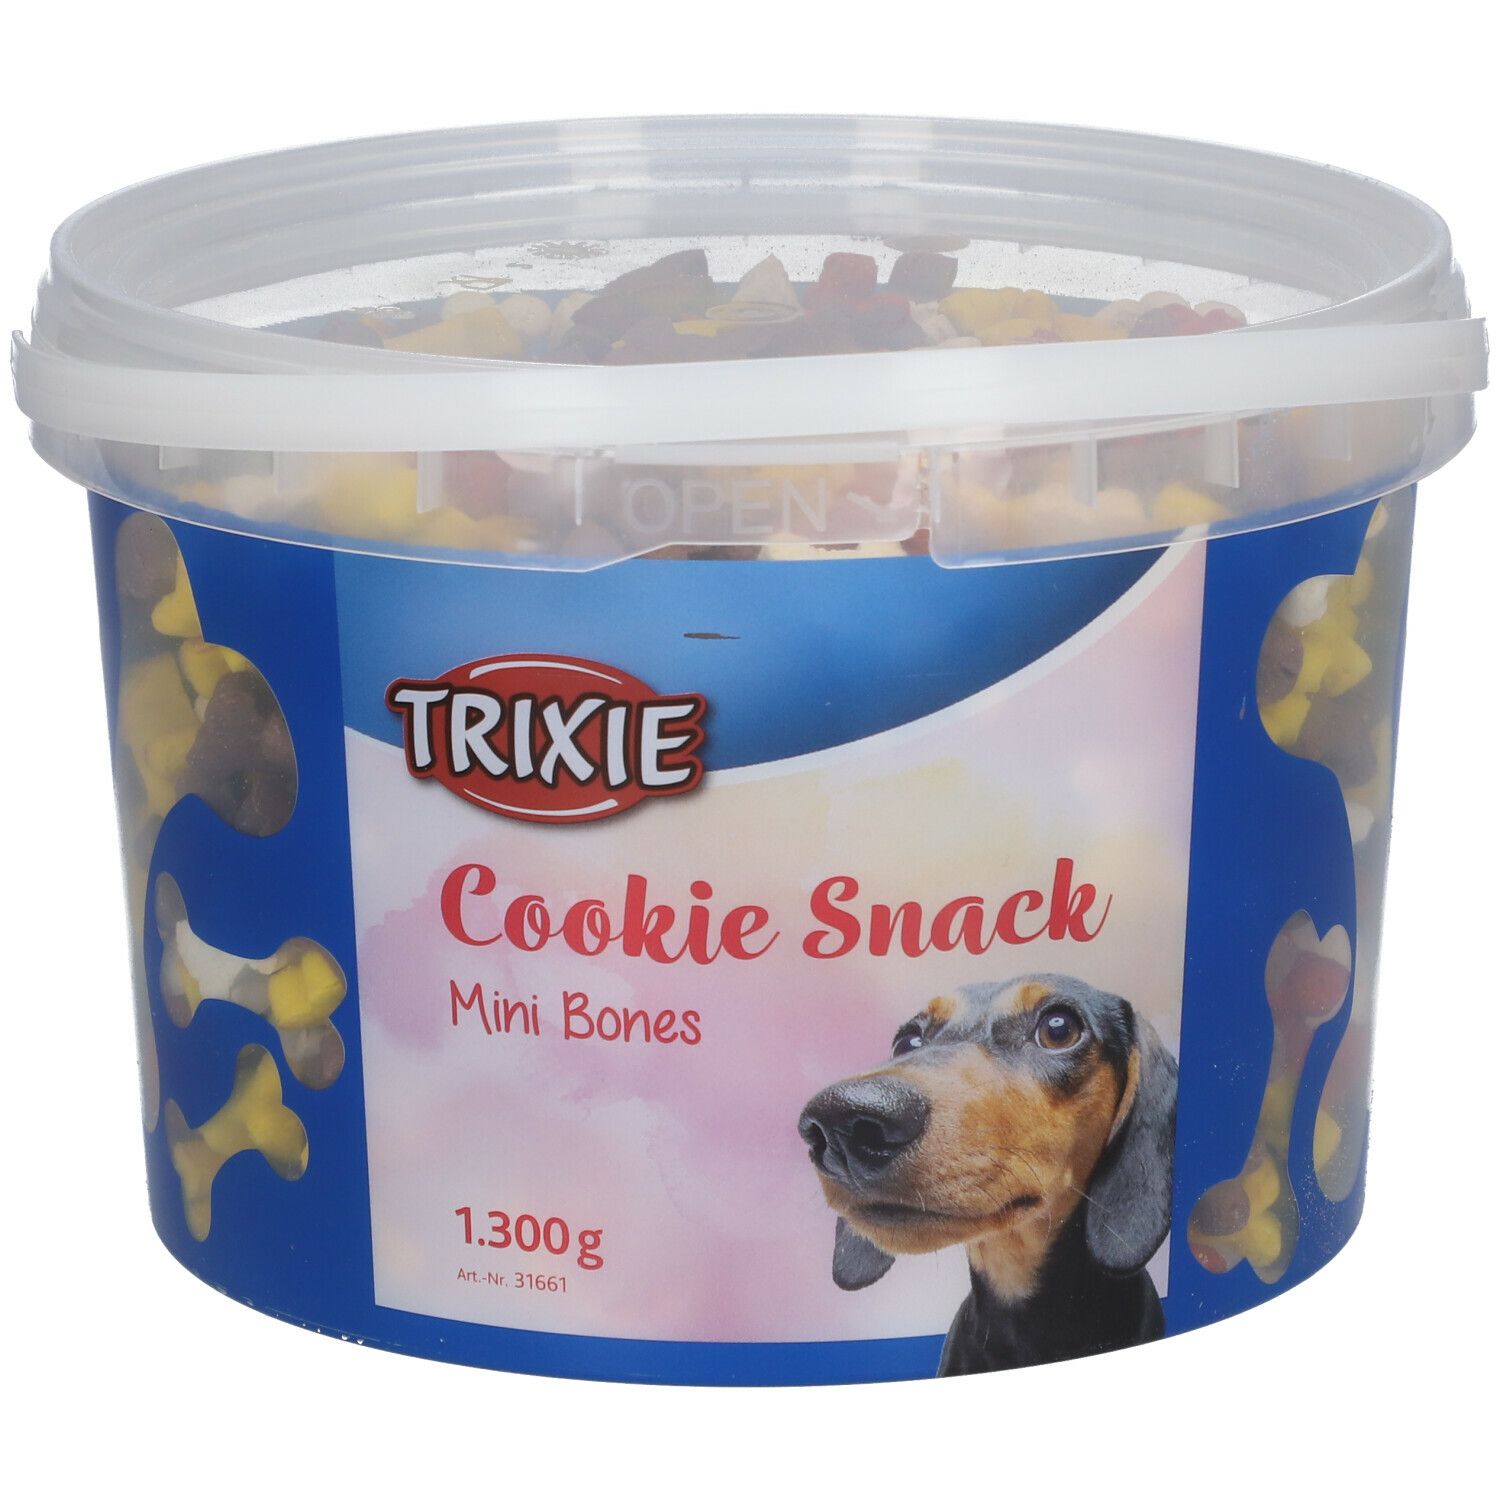 Image of TRIXIE Cookie Snack Mini Bones